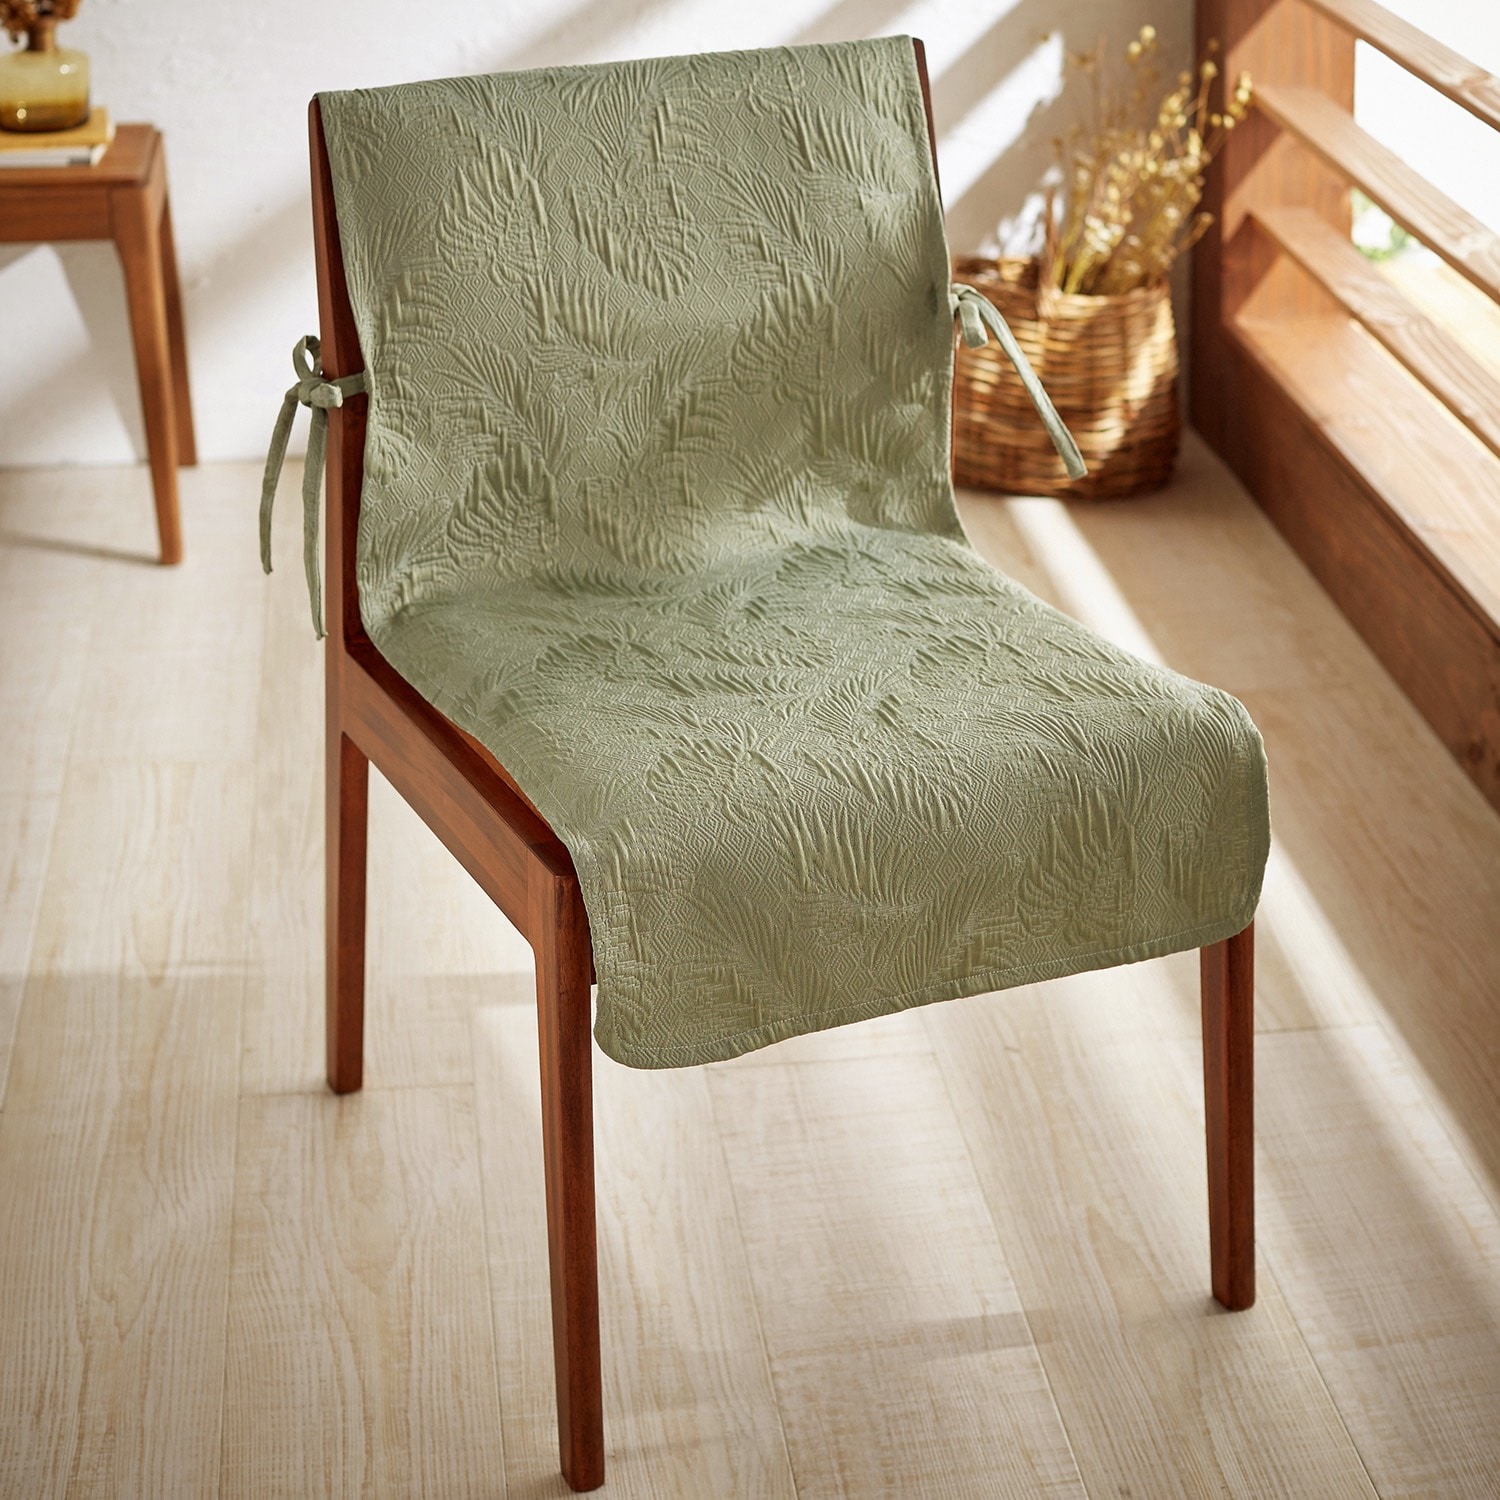 立体的な膨れ織風ジャカード織の椅子カバー